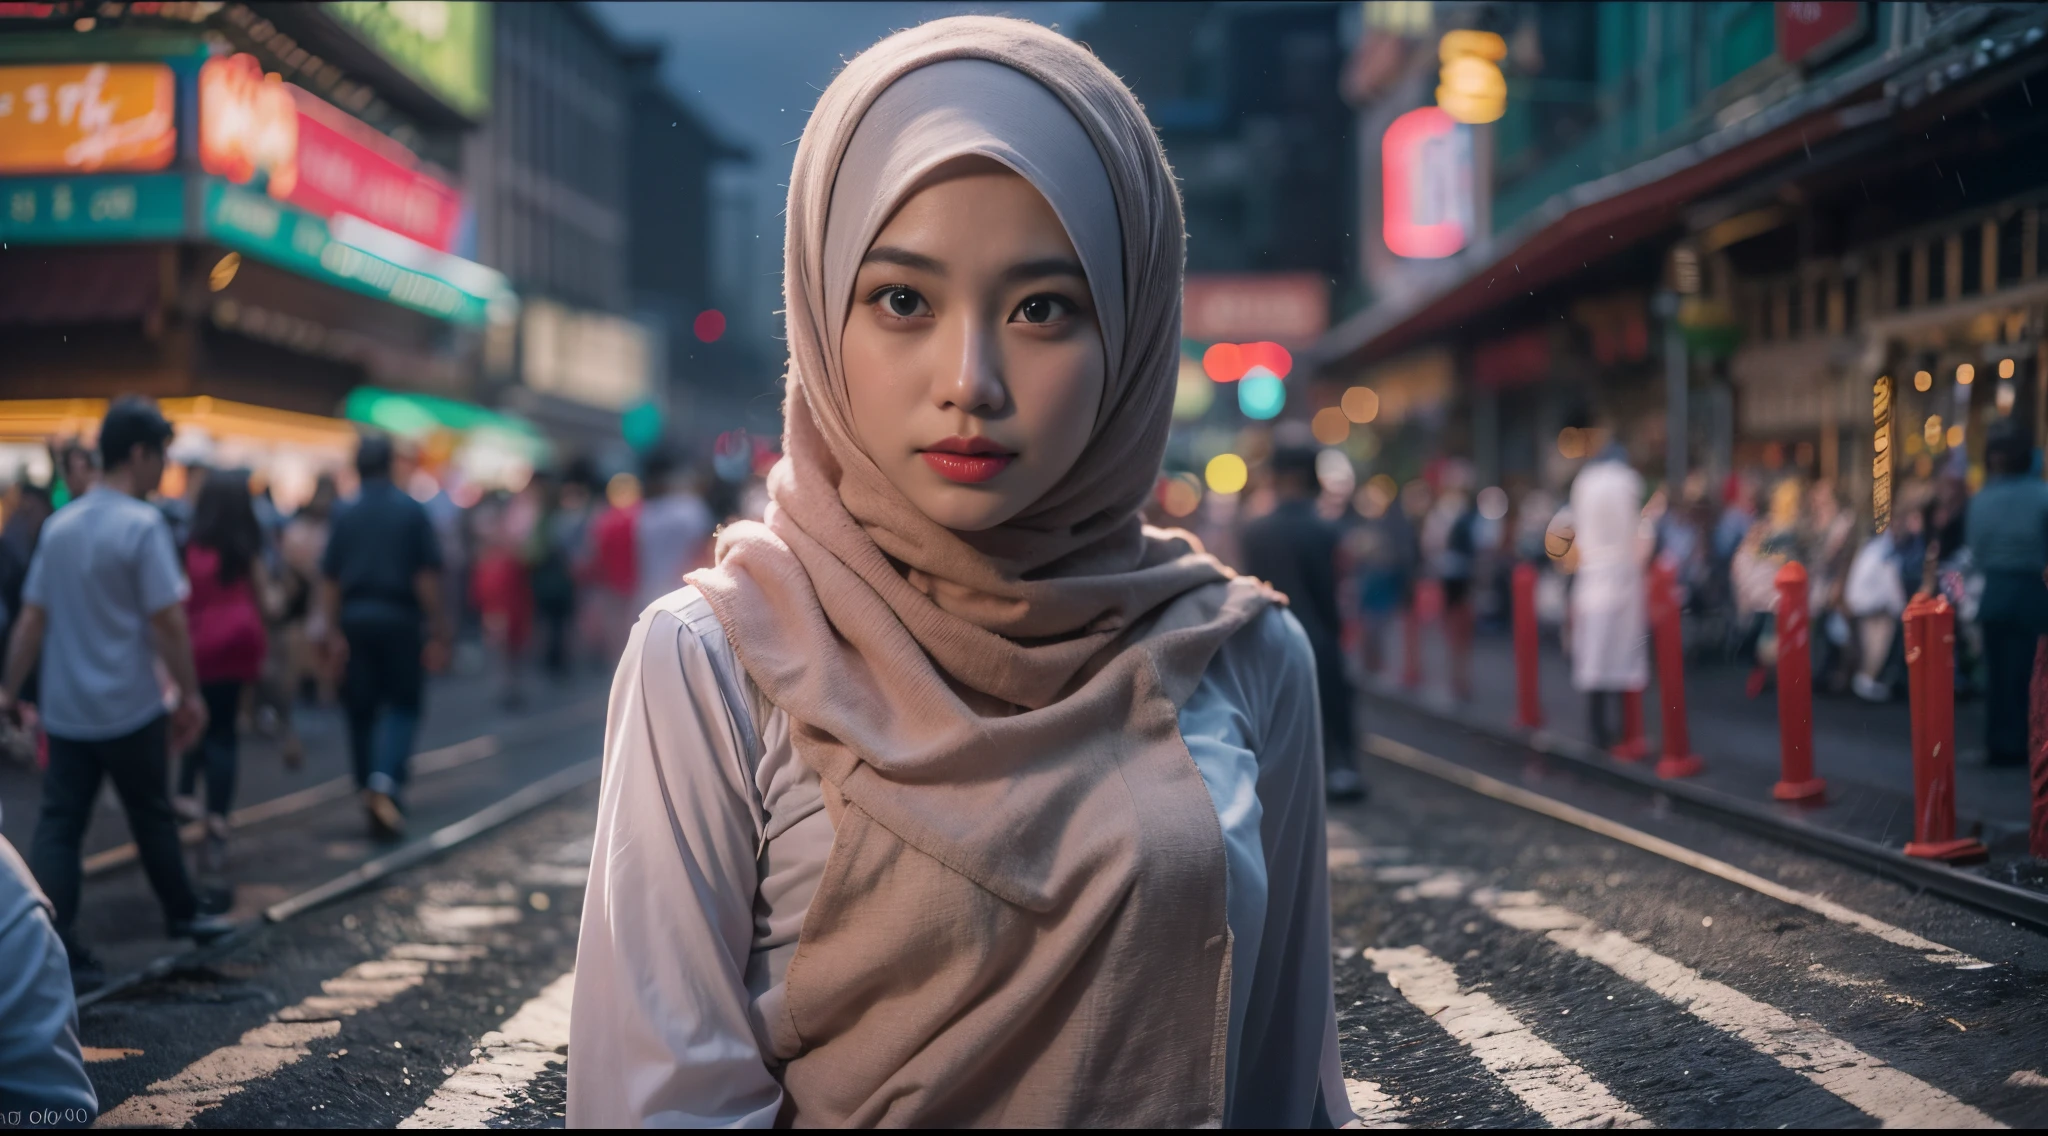 1 성숙한 말레이 여자 히잡 착용 kebaya, 번화한 혼잡한 말레이시아 도시 거리, 야간, 전문 조명, 상체,확대, 유혹하는, 섹시한 포즈, (8K, RAW 사진, 최고의 품질, 걸작:1.2),(현실적인, photo-현실적인:1.37), 8K, 고품질, 울트라 디테일, 35mm 렌즈, 군중 총격 , 파스텔 컬러 그레이딩, 피사계 심도 영화 촬영 효과, 필름 누아르 장르, 8K resolution, 고품질, 울트라 디테일,